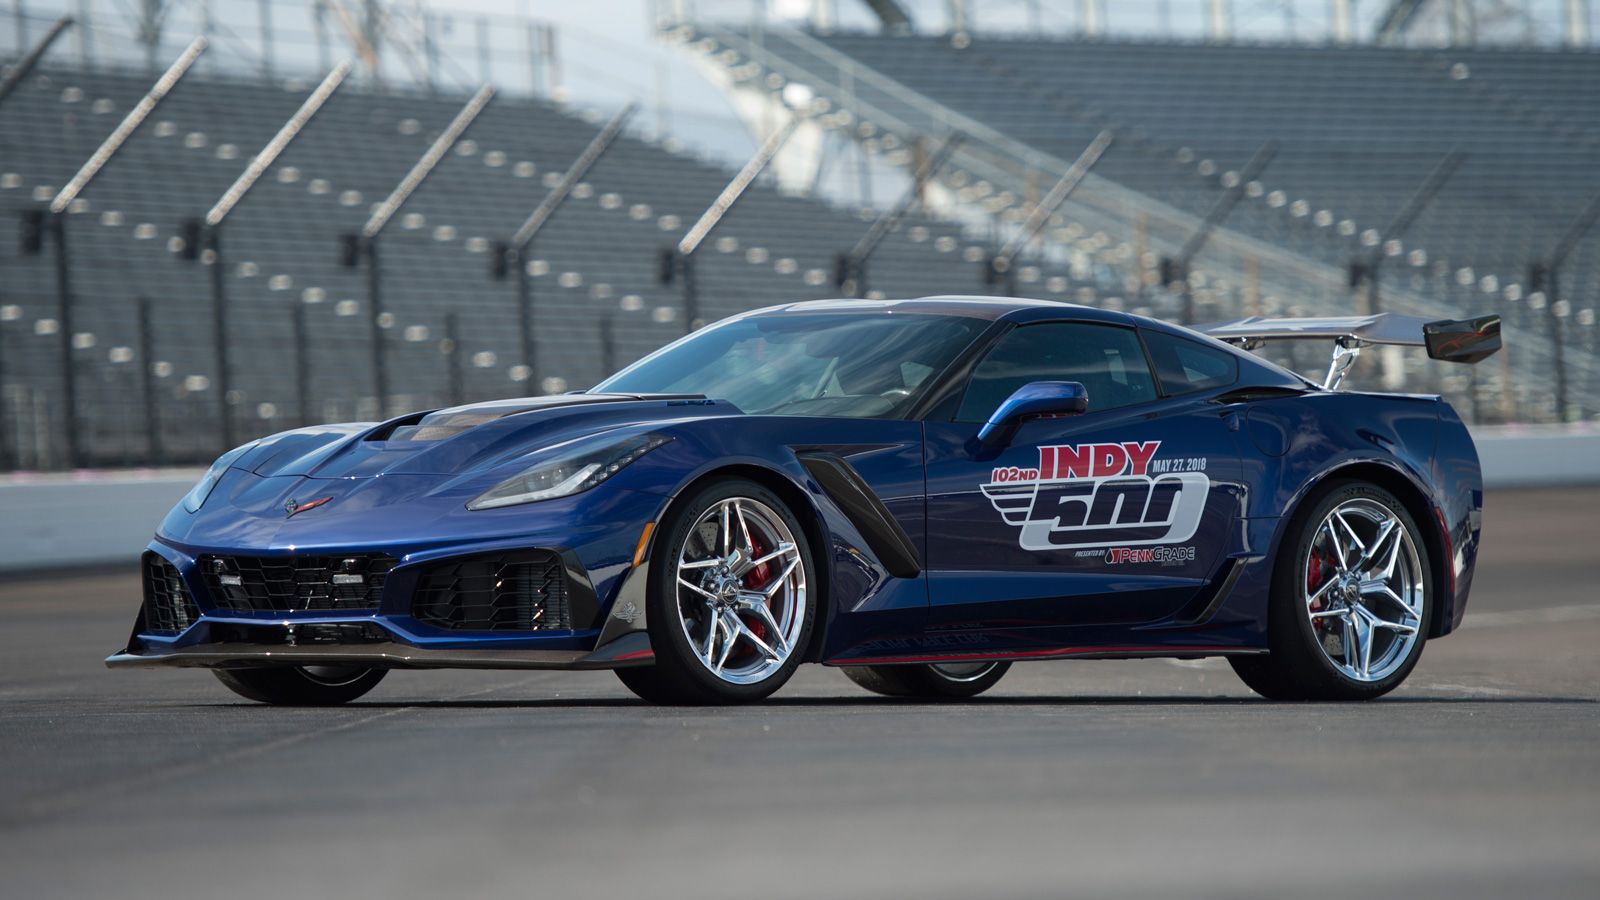 The 2019 Chevrolet Corvette ZR1 Indy Pace Car